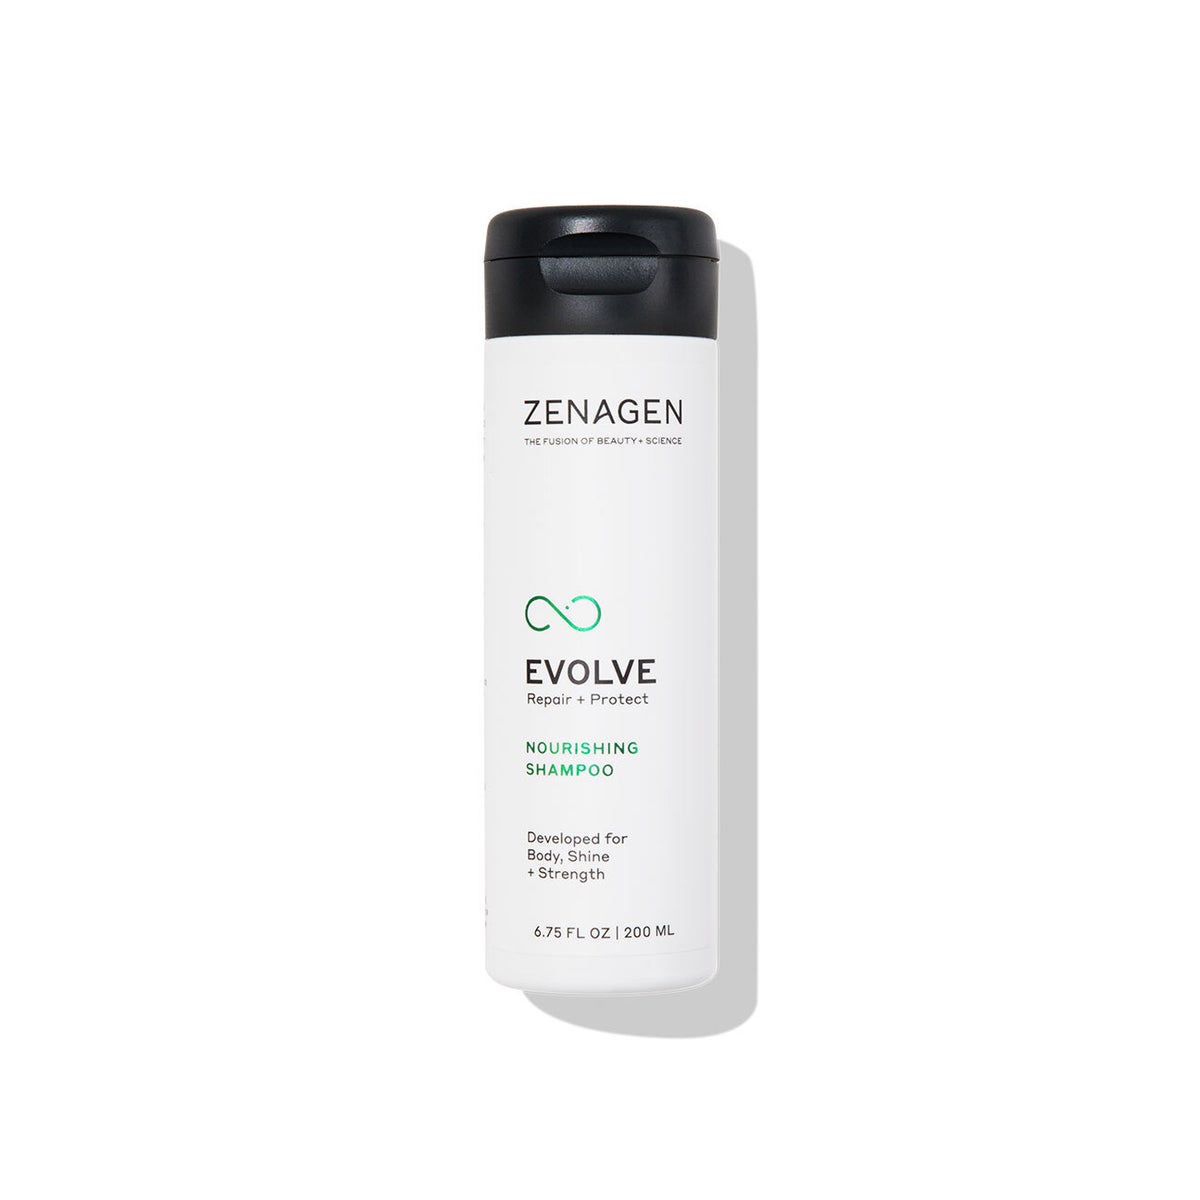 ZENAGEN 200ml Evolve Nourishing Shampoo 6.75oz